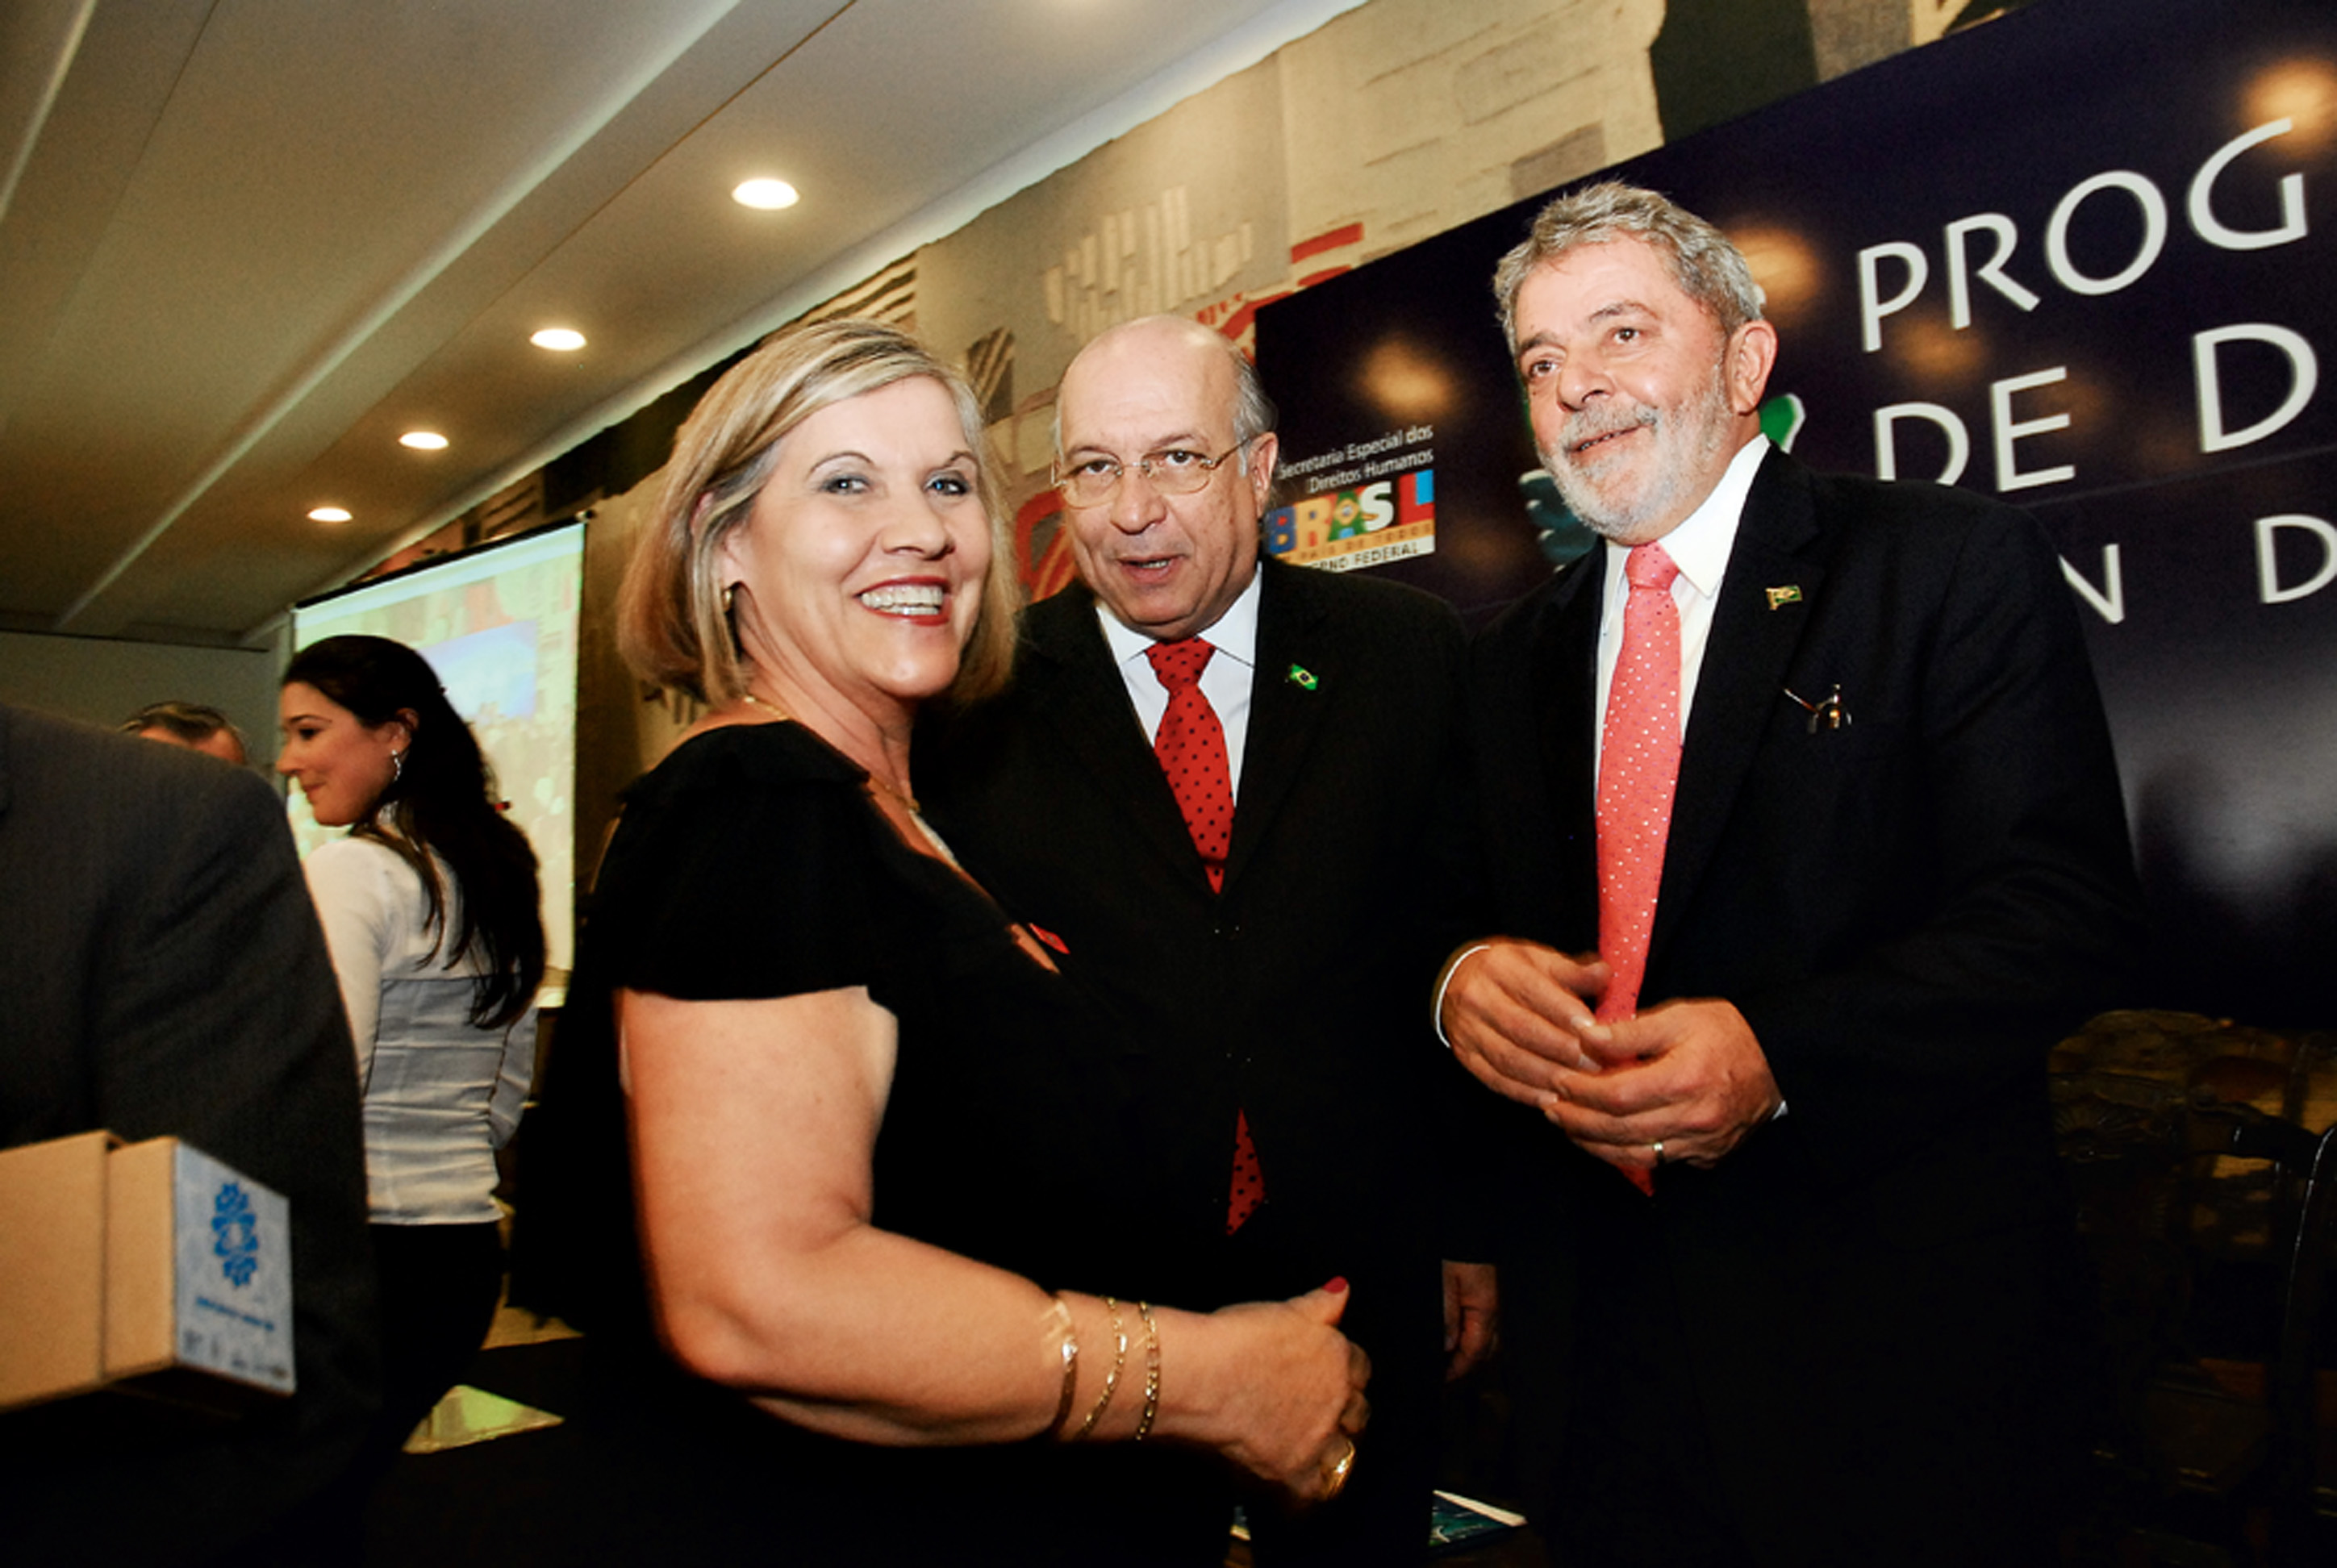 Em 2009, ao lado do então presidente Lula, de quem recebeu o Prêmio Direitos Humanos